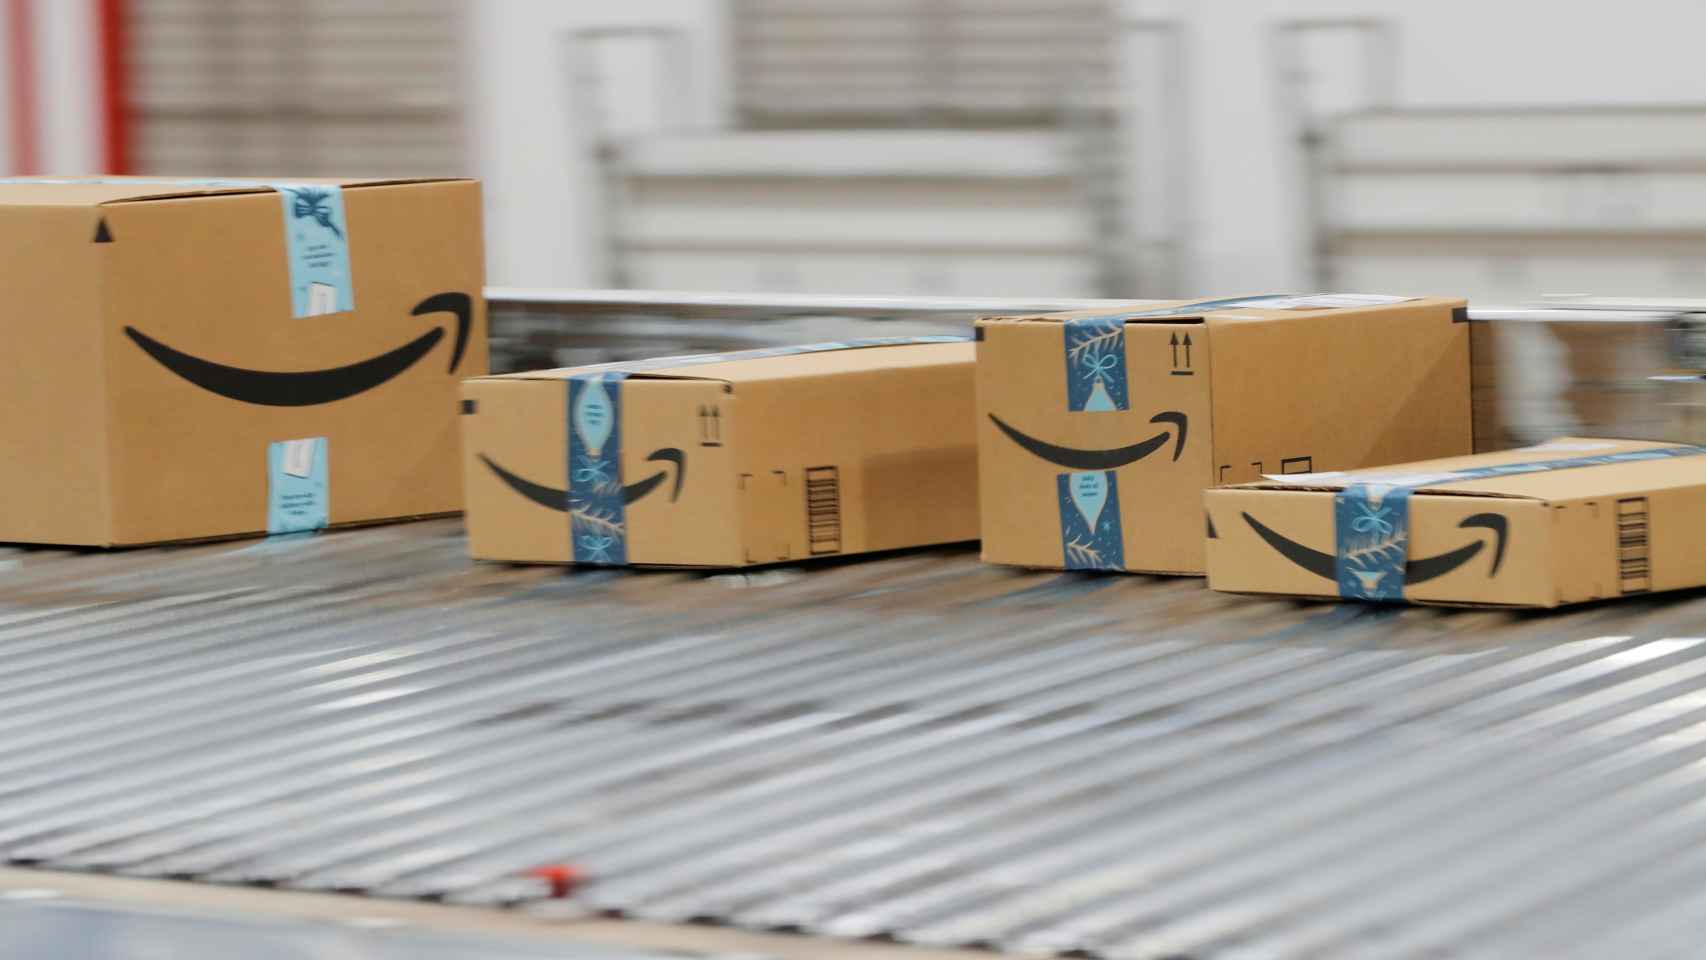 Paquetes de Amazon, a punto de salir de un centro logístico.